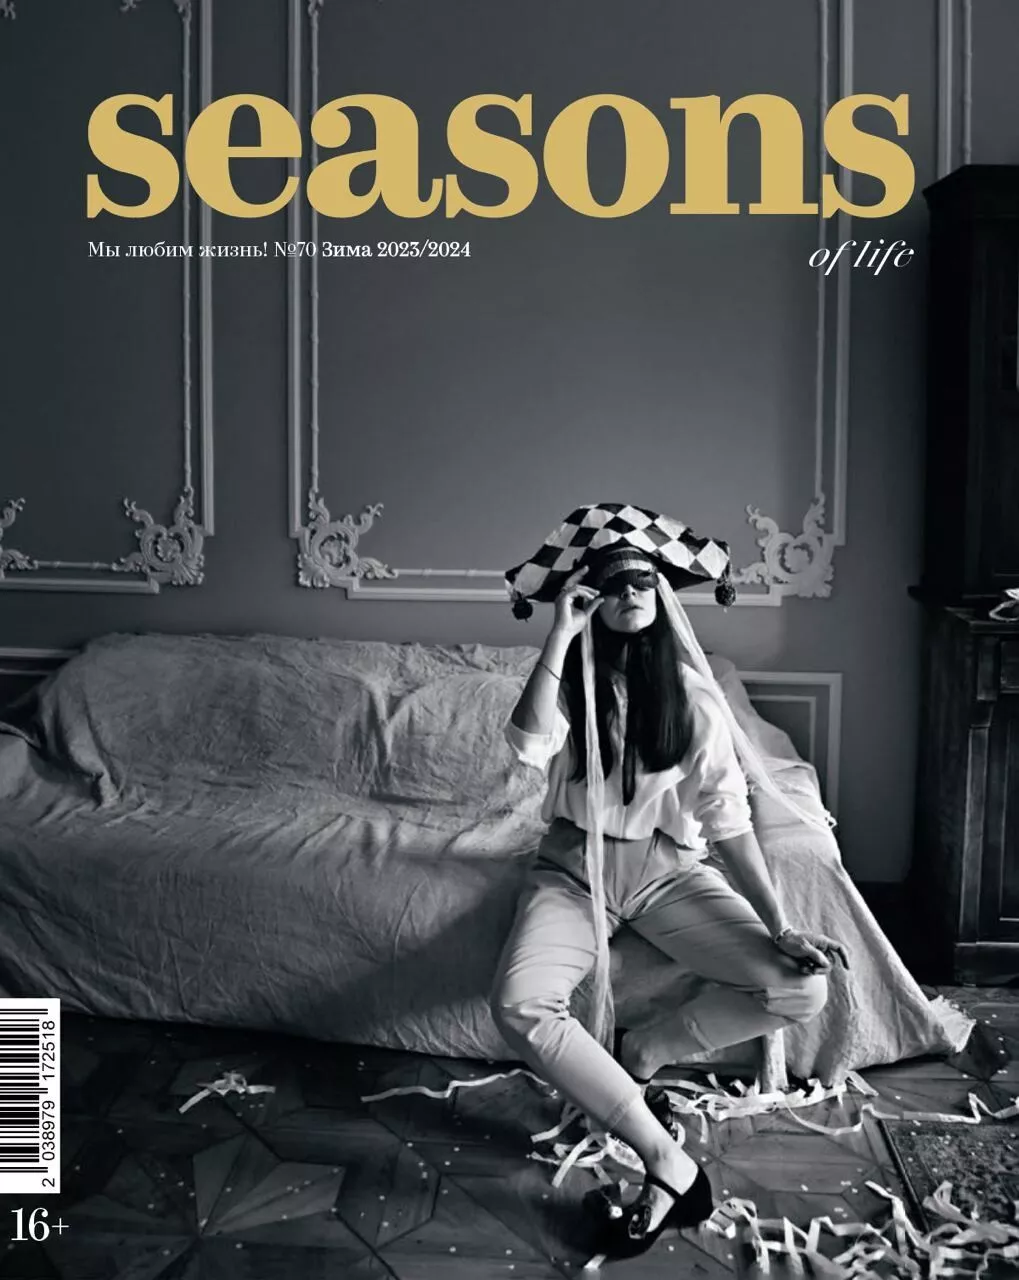 Журнал Seasons of life №70 зима 2023/2024